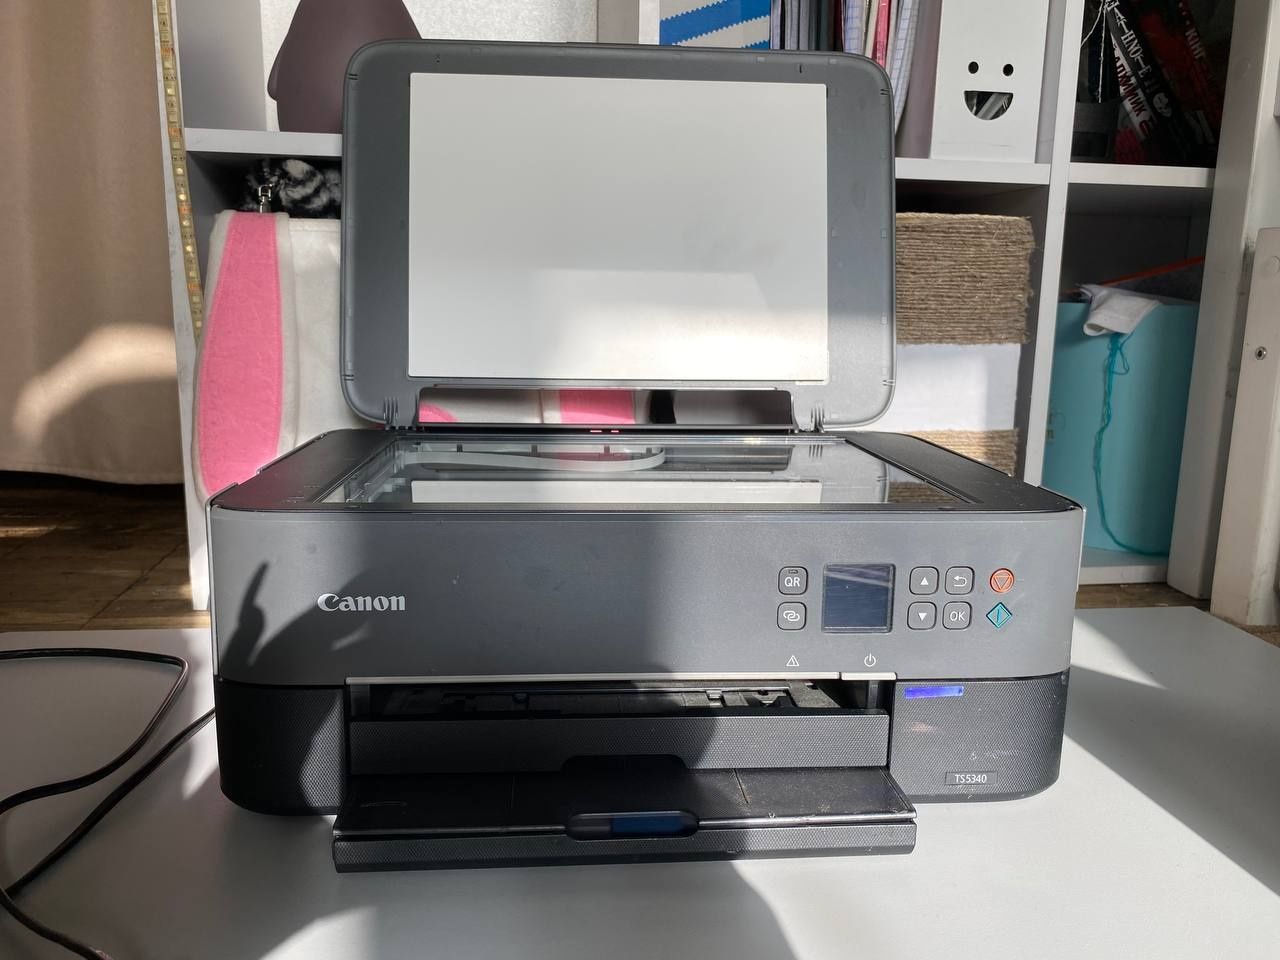 Продам б/у фото принтер в робочем состоянии